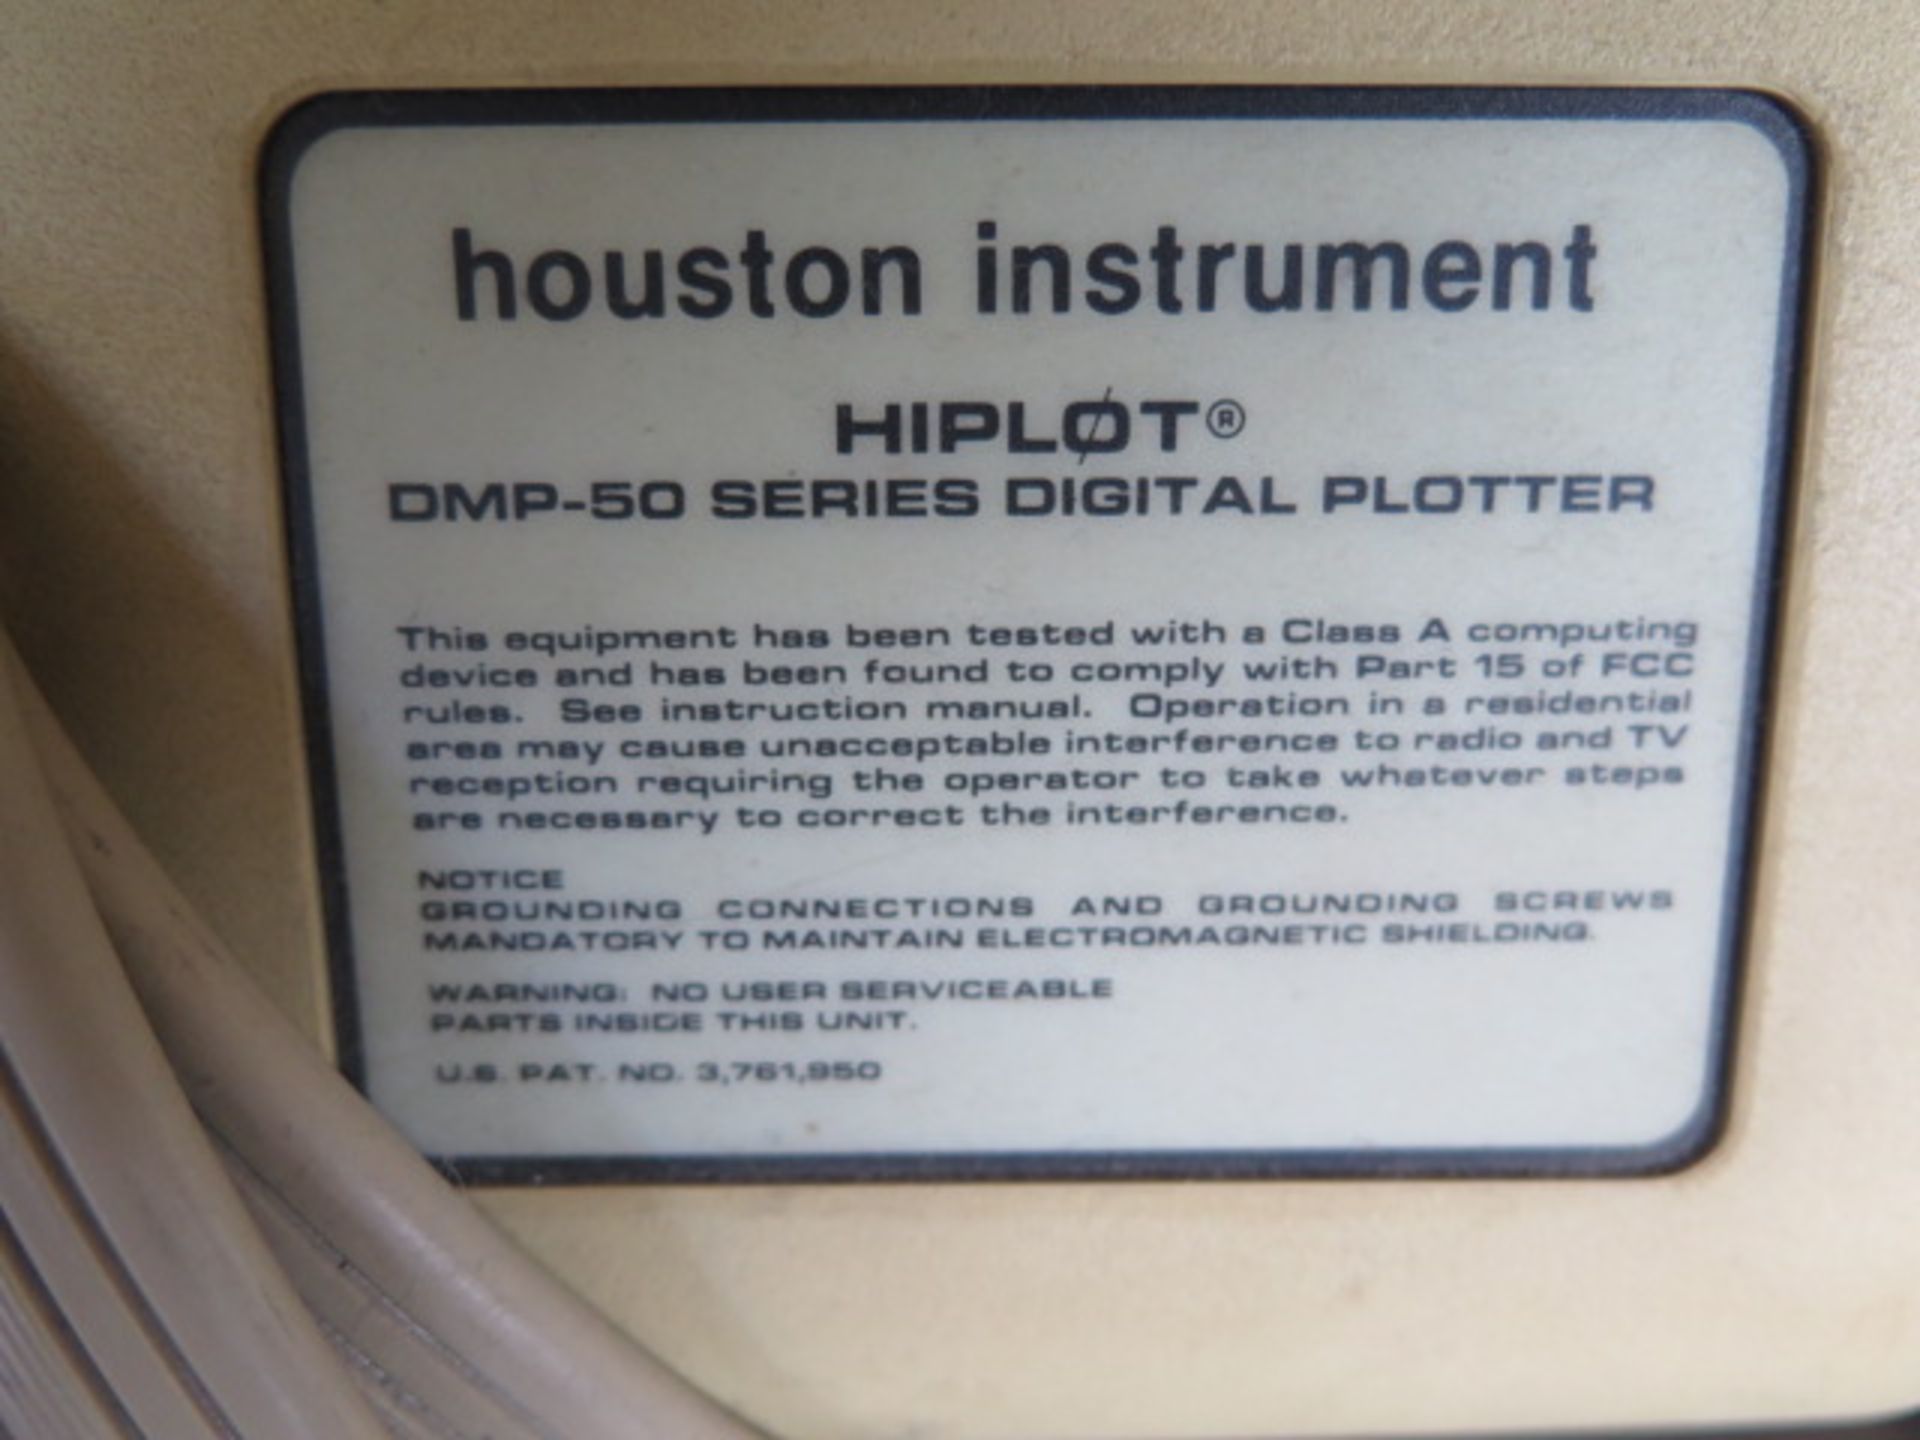 Houston Instrument "Hiplot" DMP-50 Plotter (SOLD AS-IS - NO WARRANTY) - Bild 7 aus 7